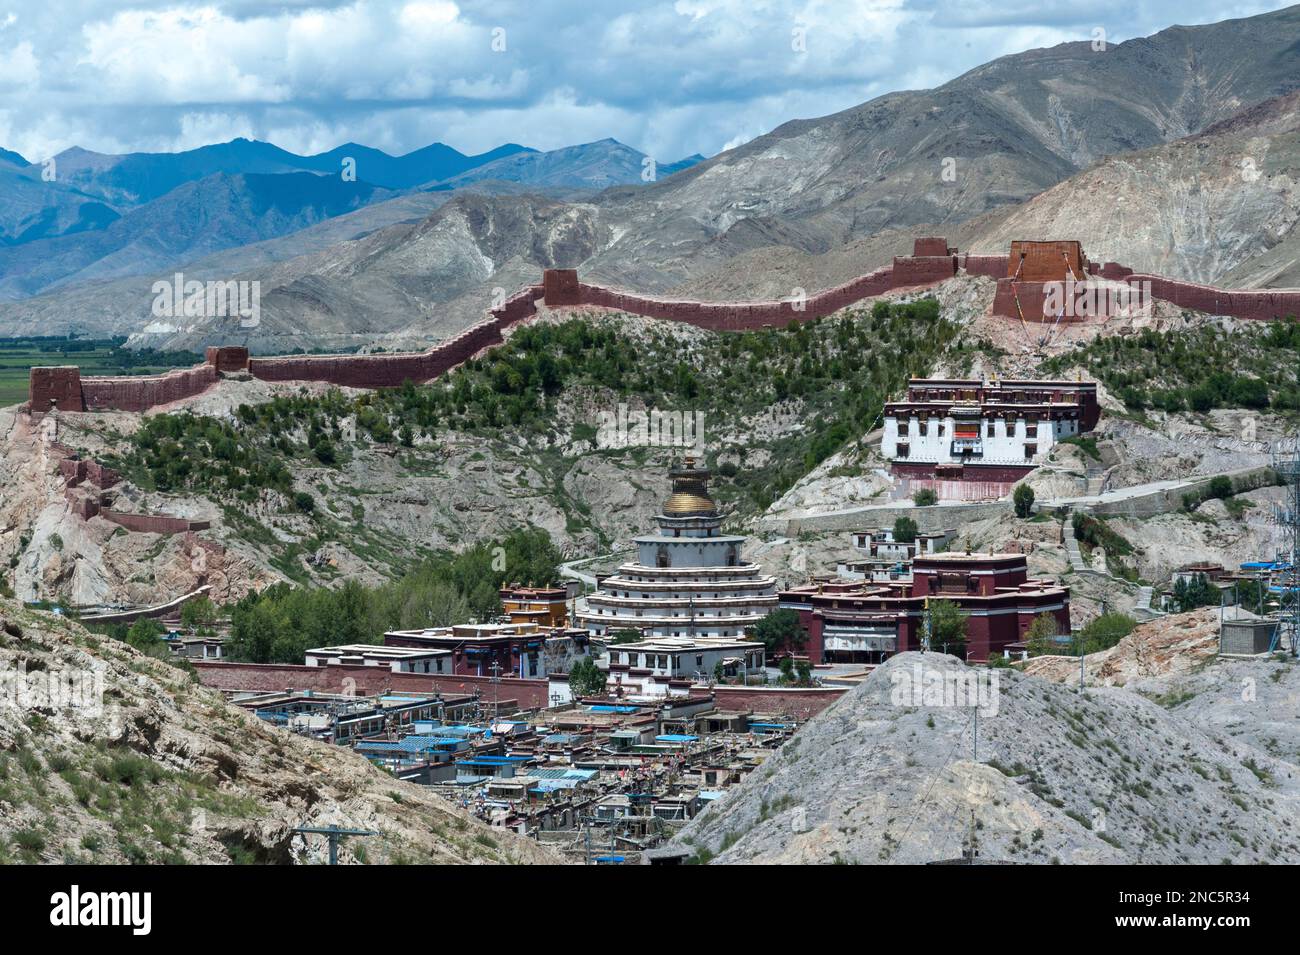 Ansicht der buddhistischen Kumbum chorten in Gyantse im Pelkor Chode Kloster - Tibet Autonome Region von China Stockfoto